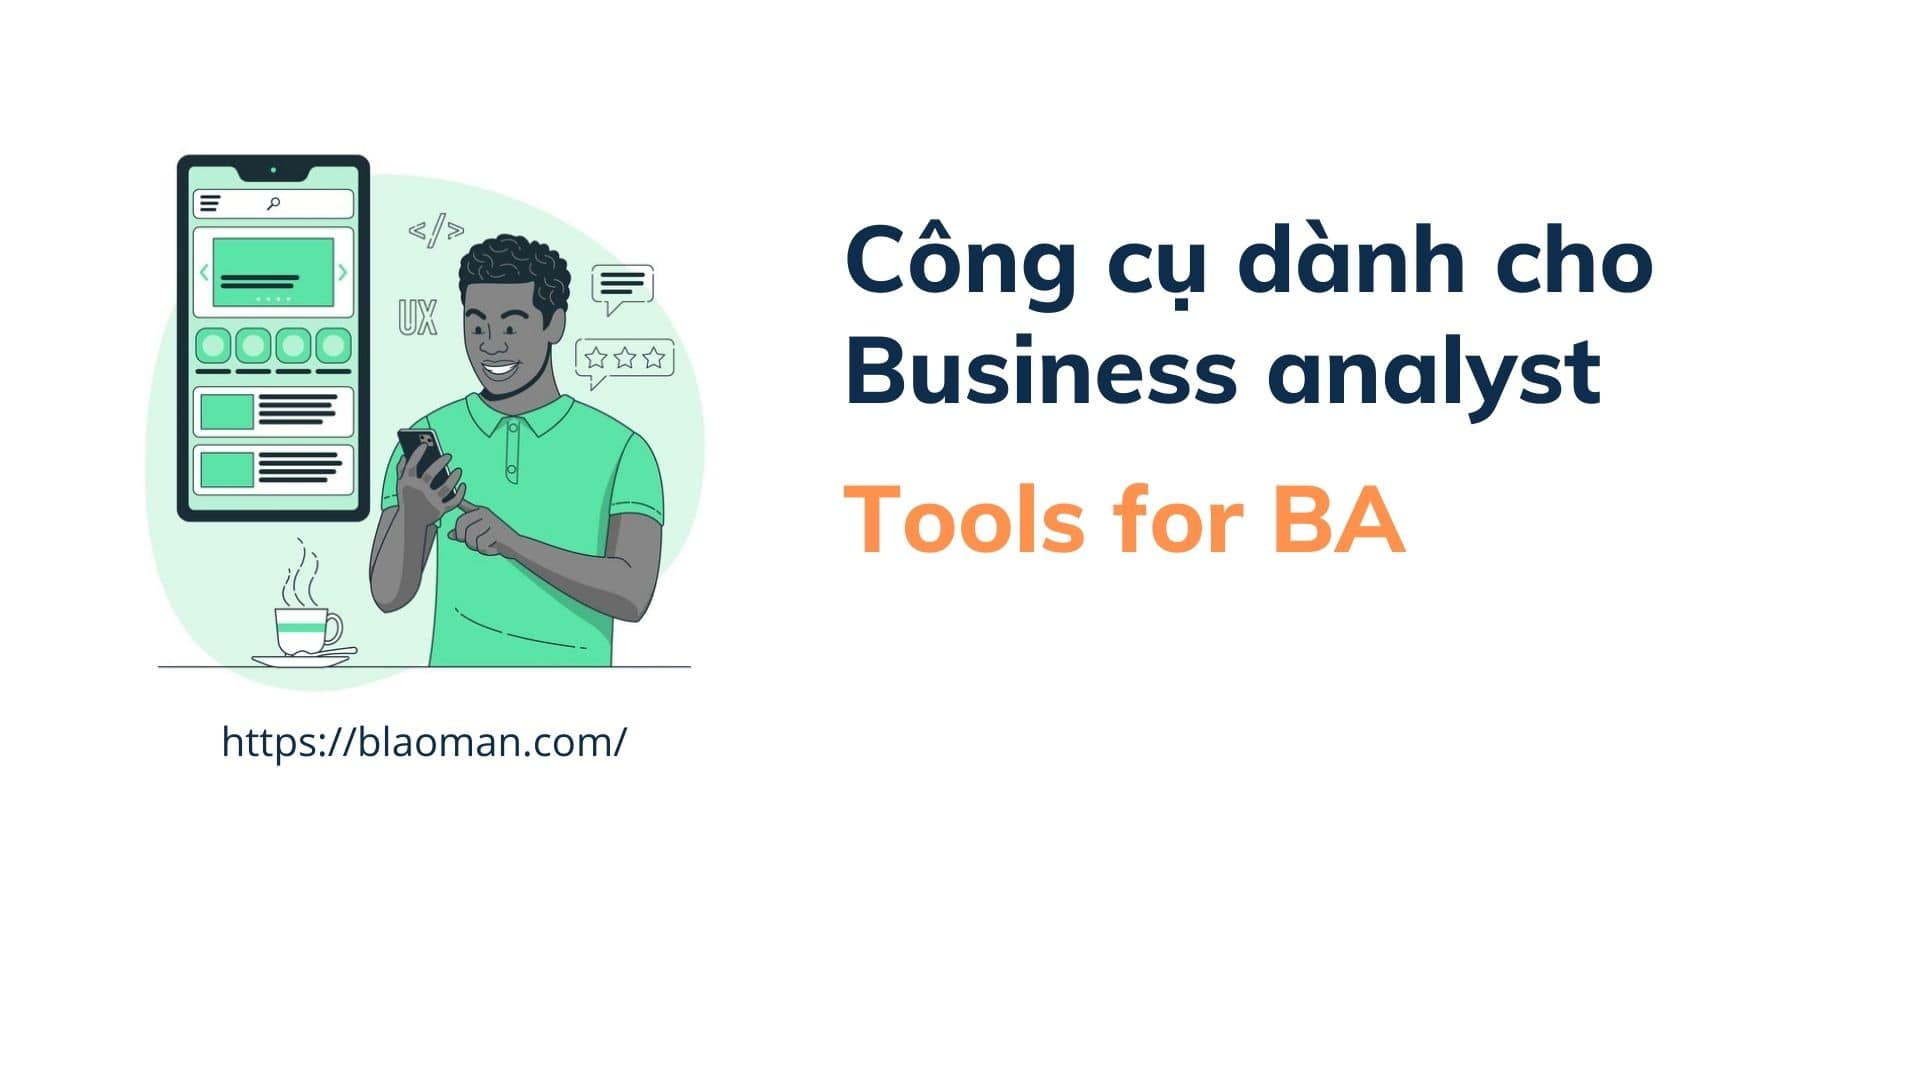 Công cụ dành cho Business Analyst – Blaoman đã sử dụng những tools nào trong công việc BA